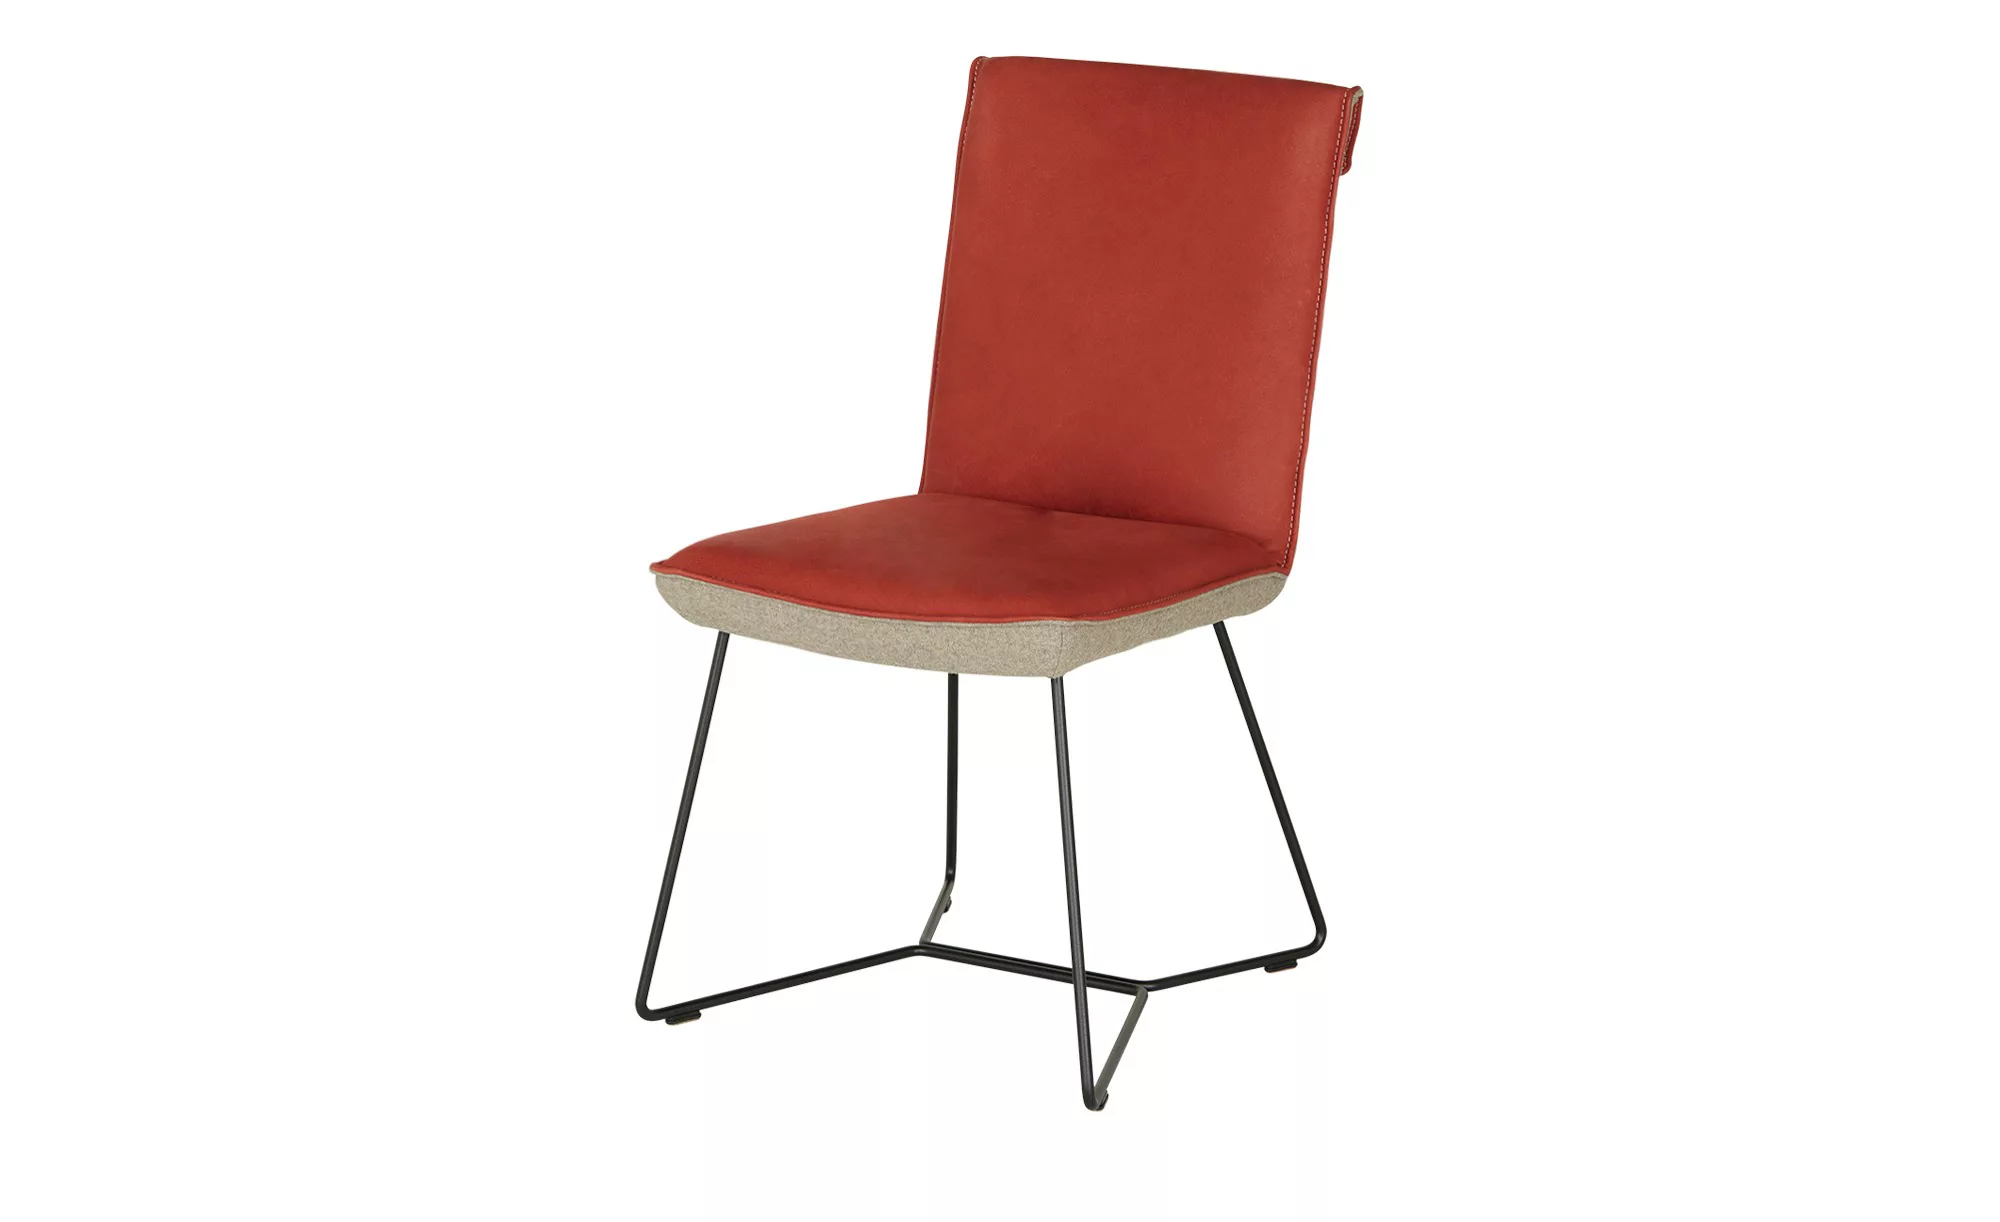 KOINOR Kufenstuhl mit Leder  Schwof - rot - 48 cm - 90 cm - 64 cm - Stühle günstig online kaufen